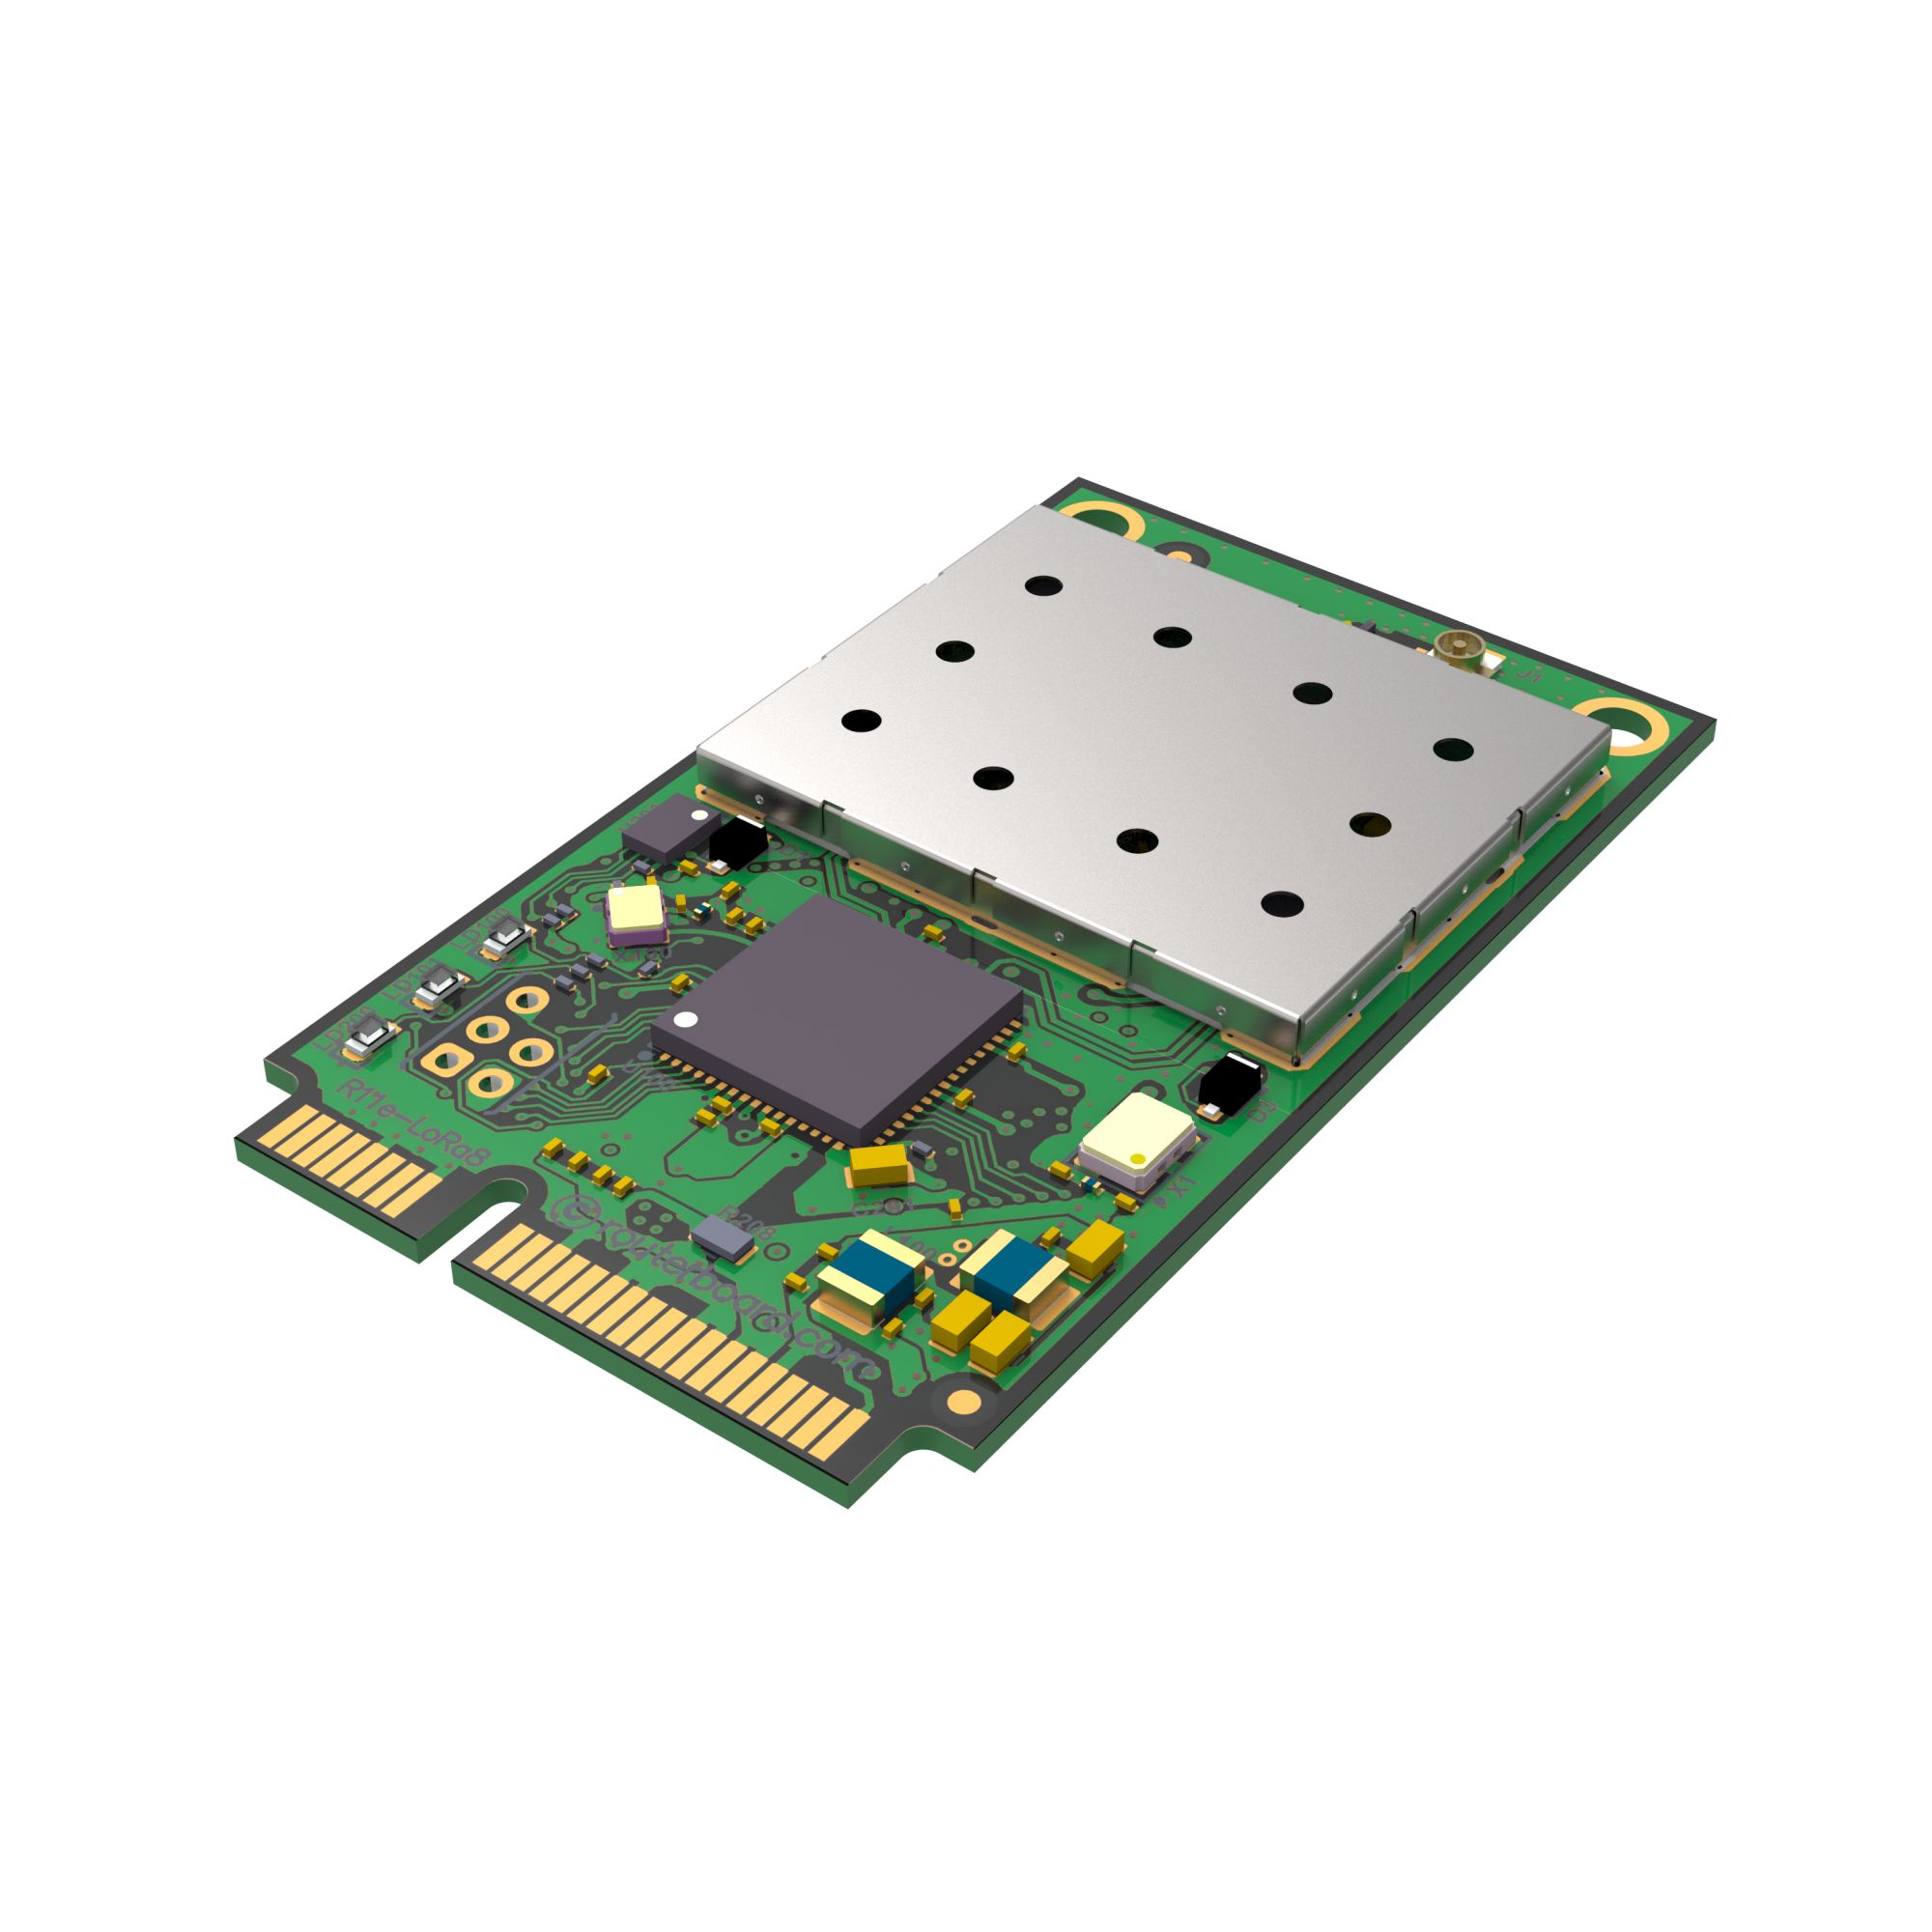 MikroTik mini PCIe R11e-LR8